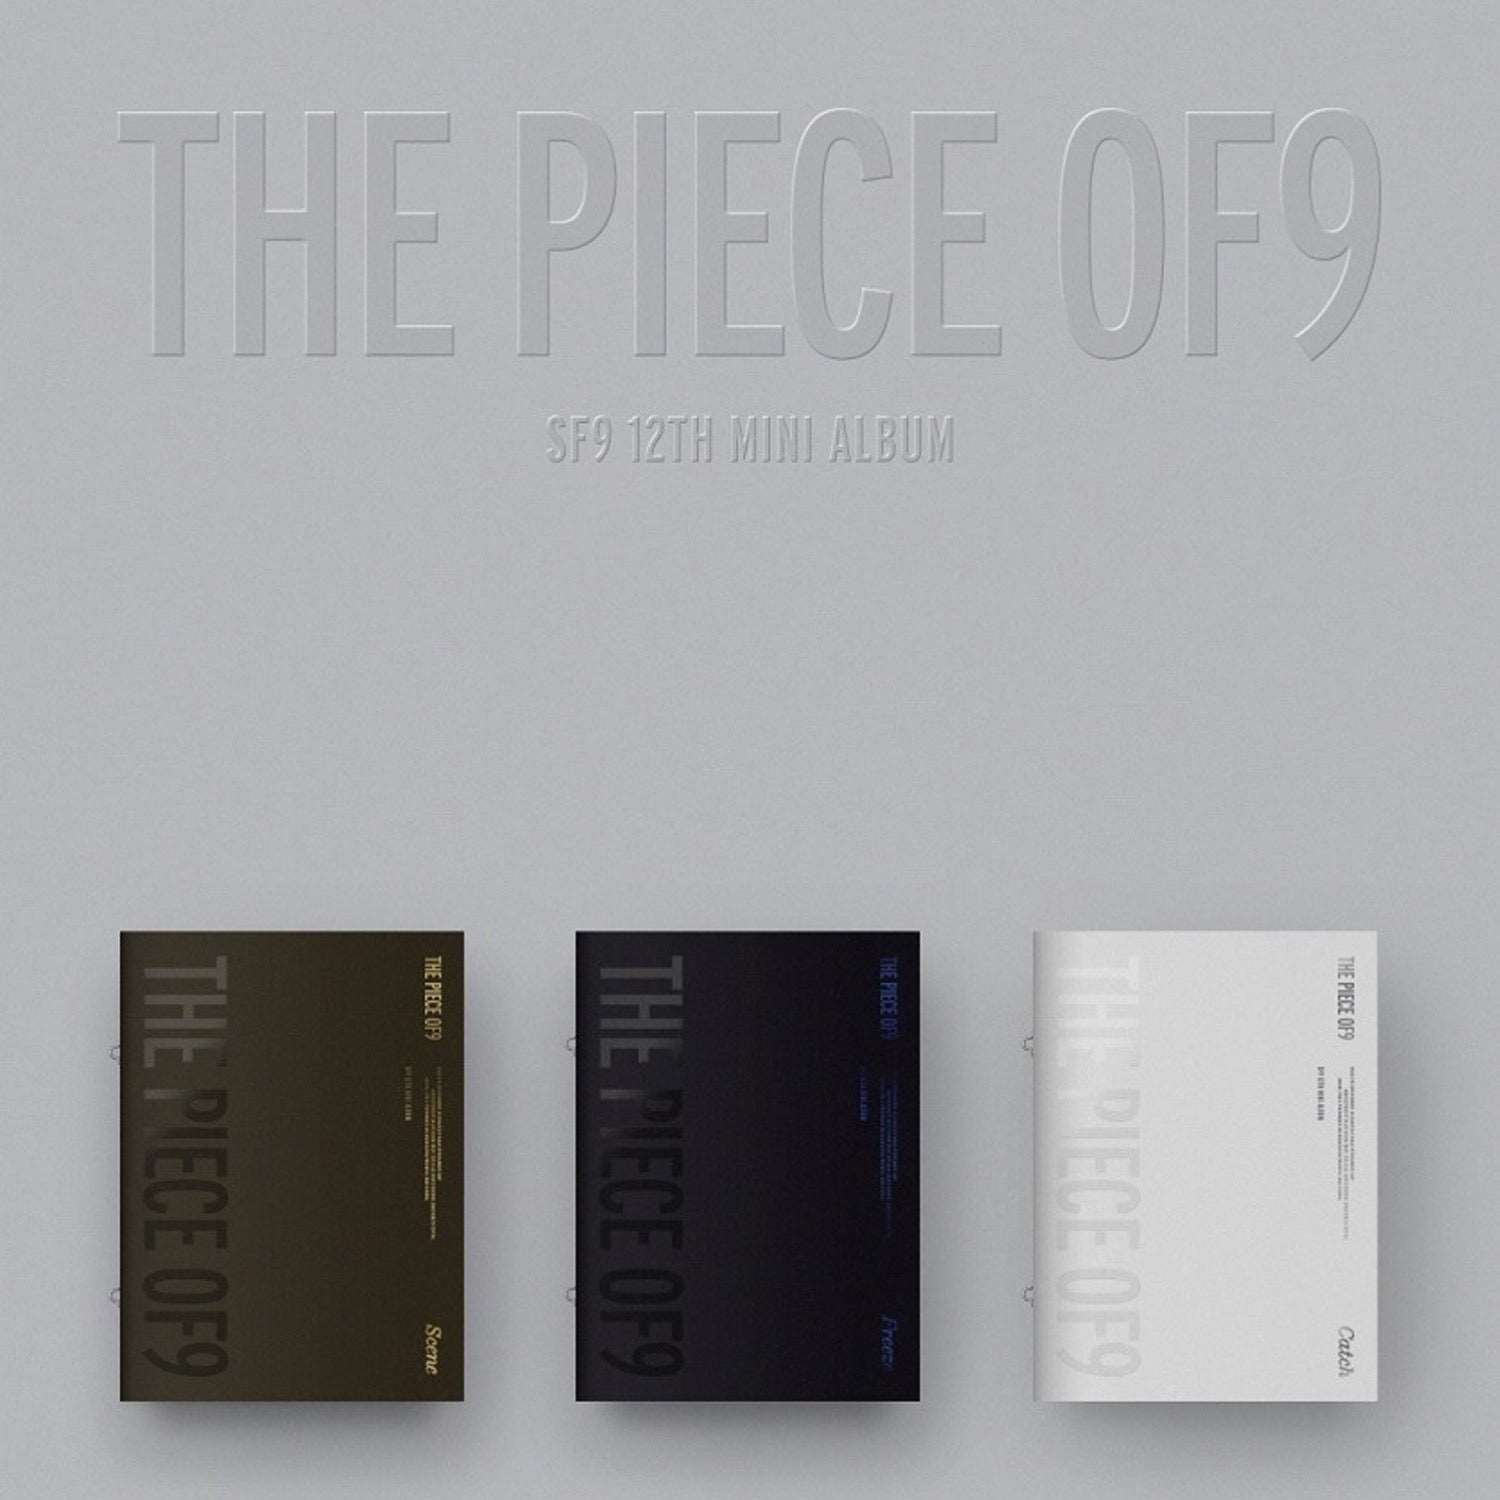 SF9 - 12th Mini Album - THE PIECE OF9